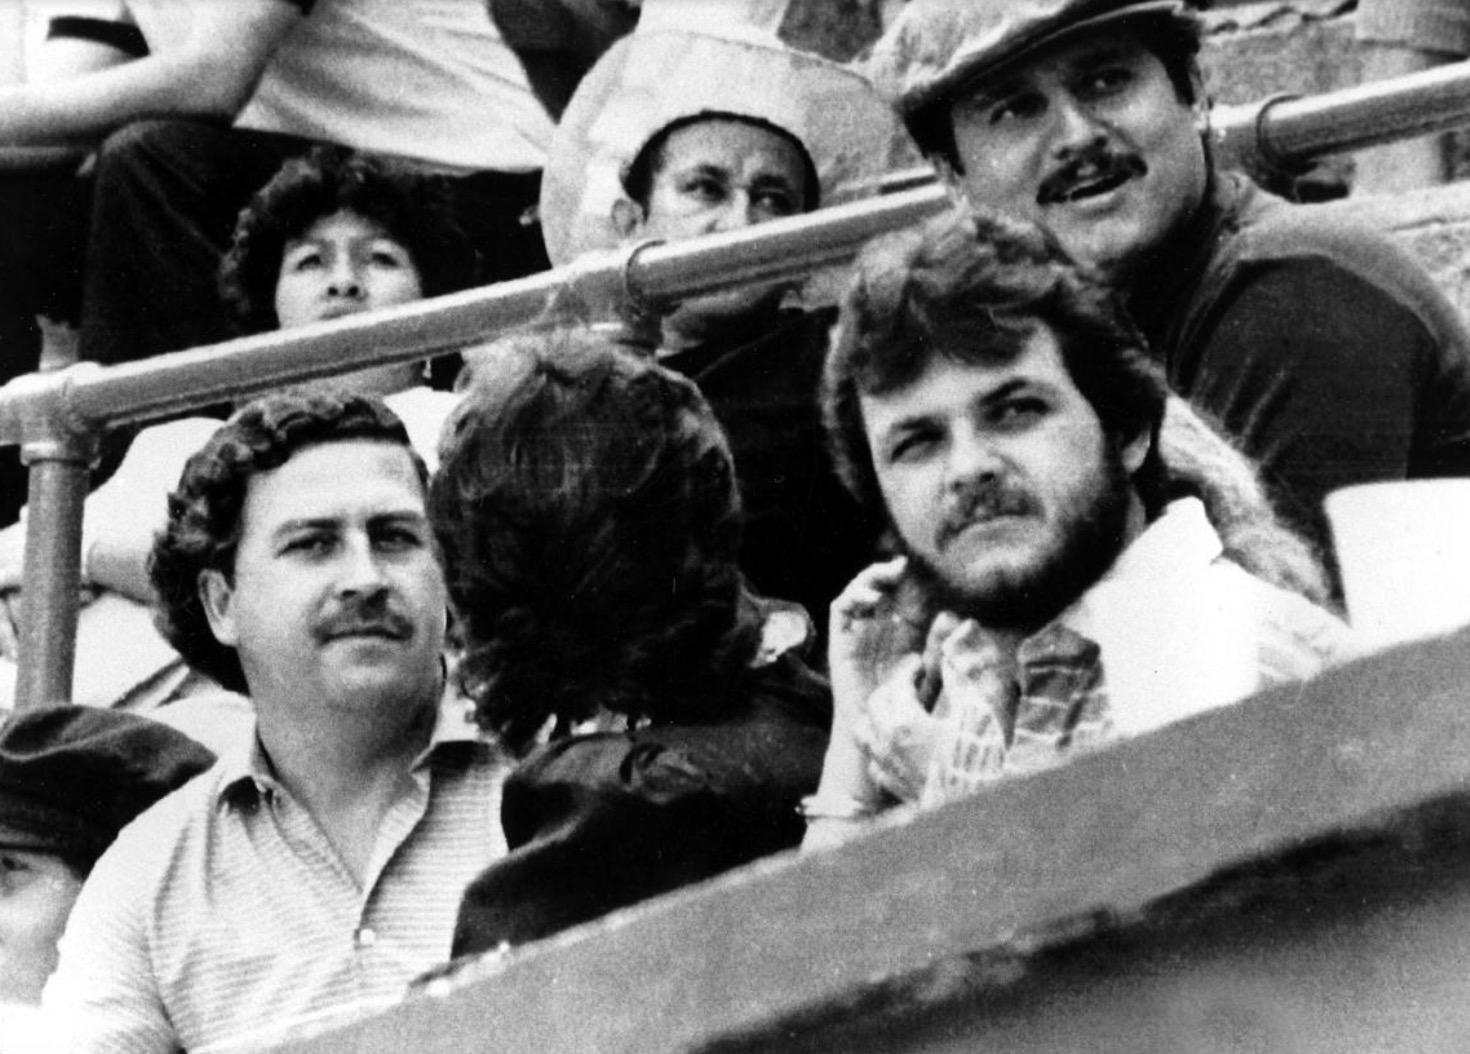 Pablo Escobari dhe karteli i drogës i Medellinit, 1983